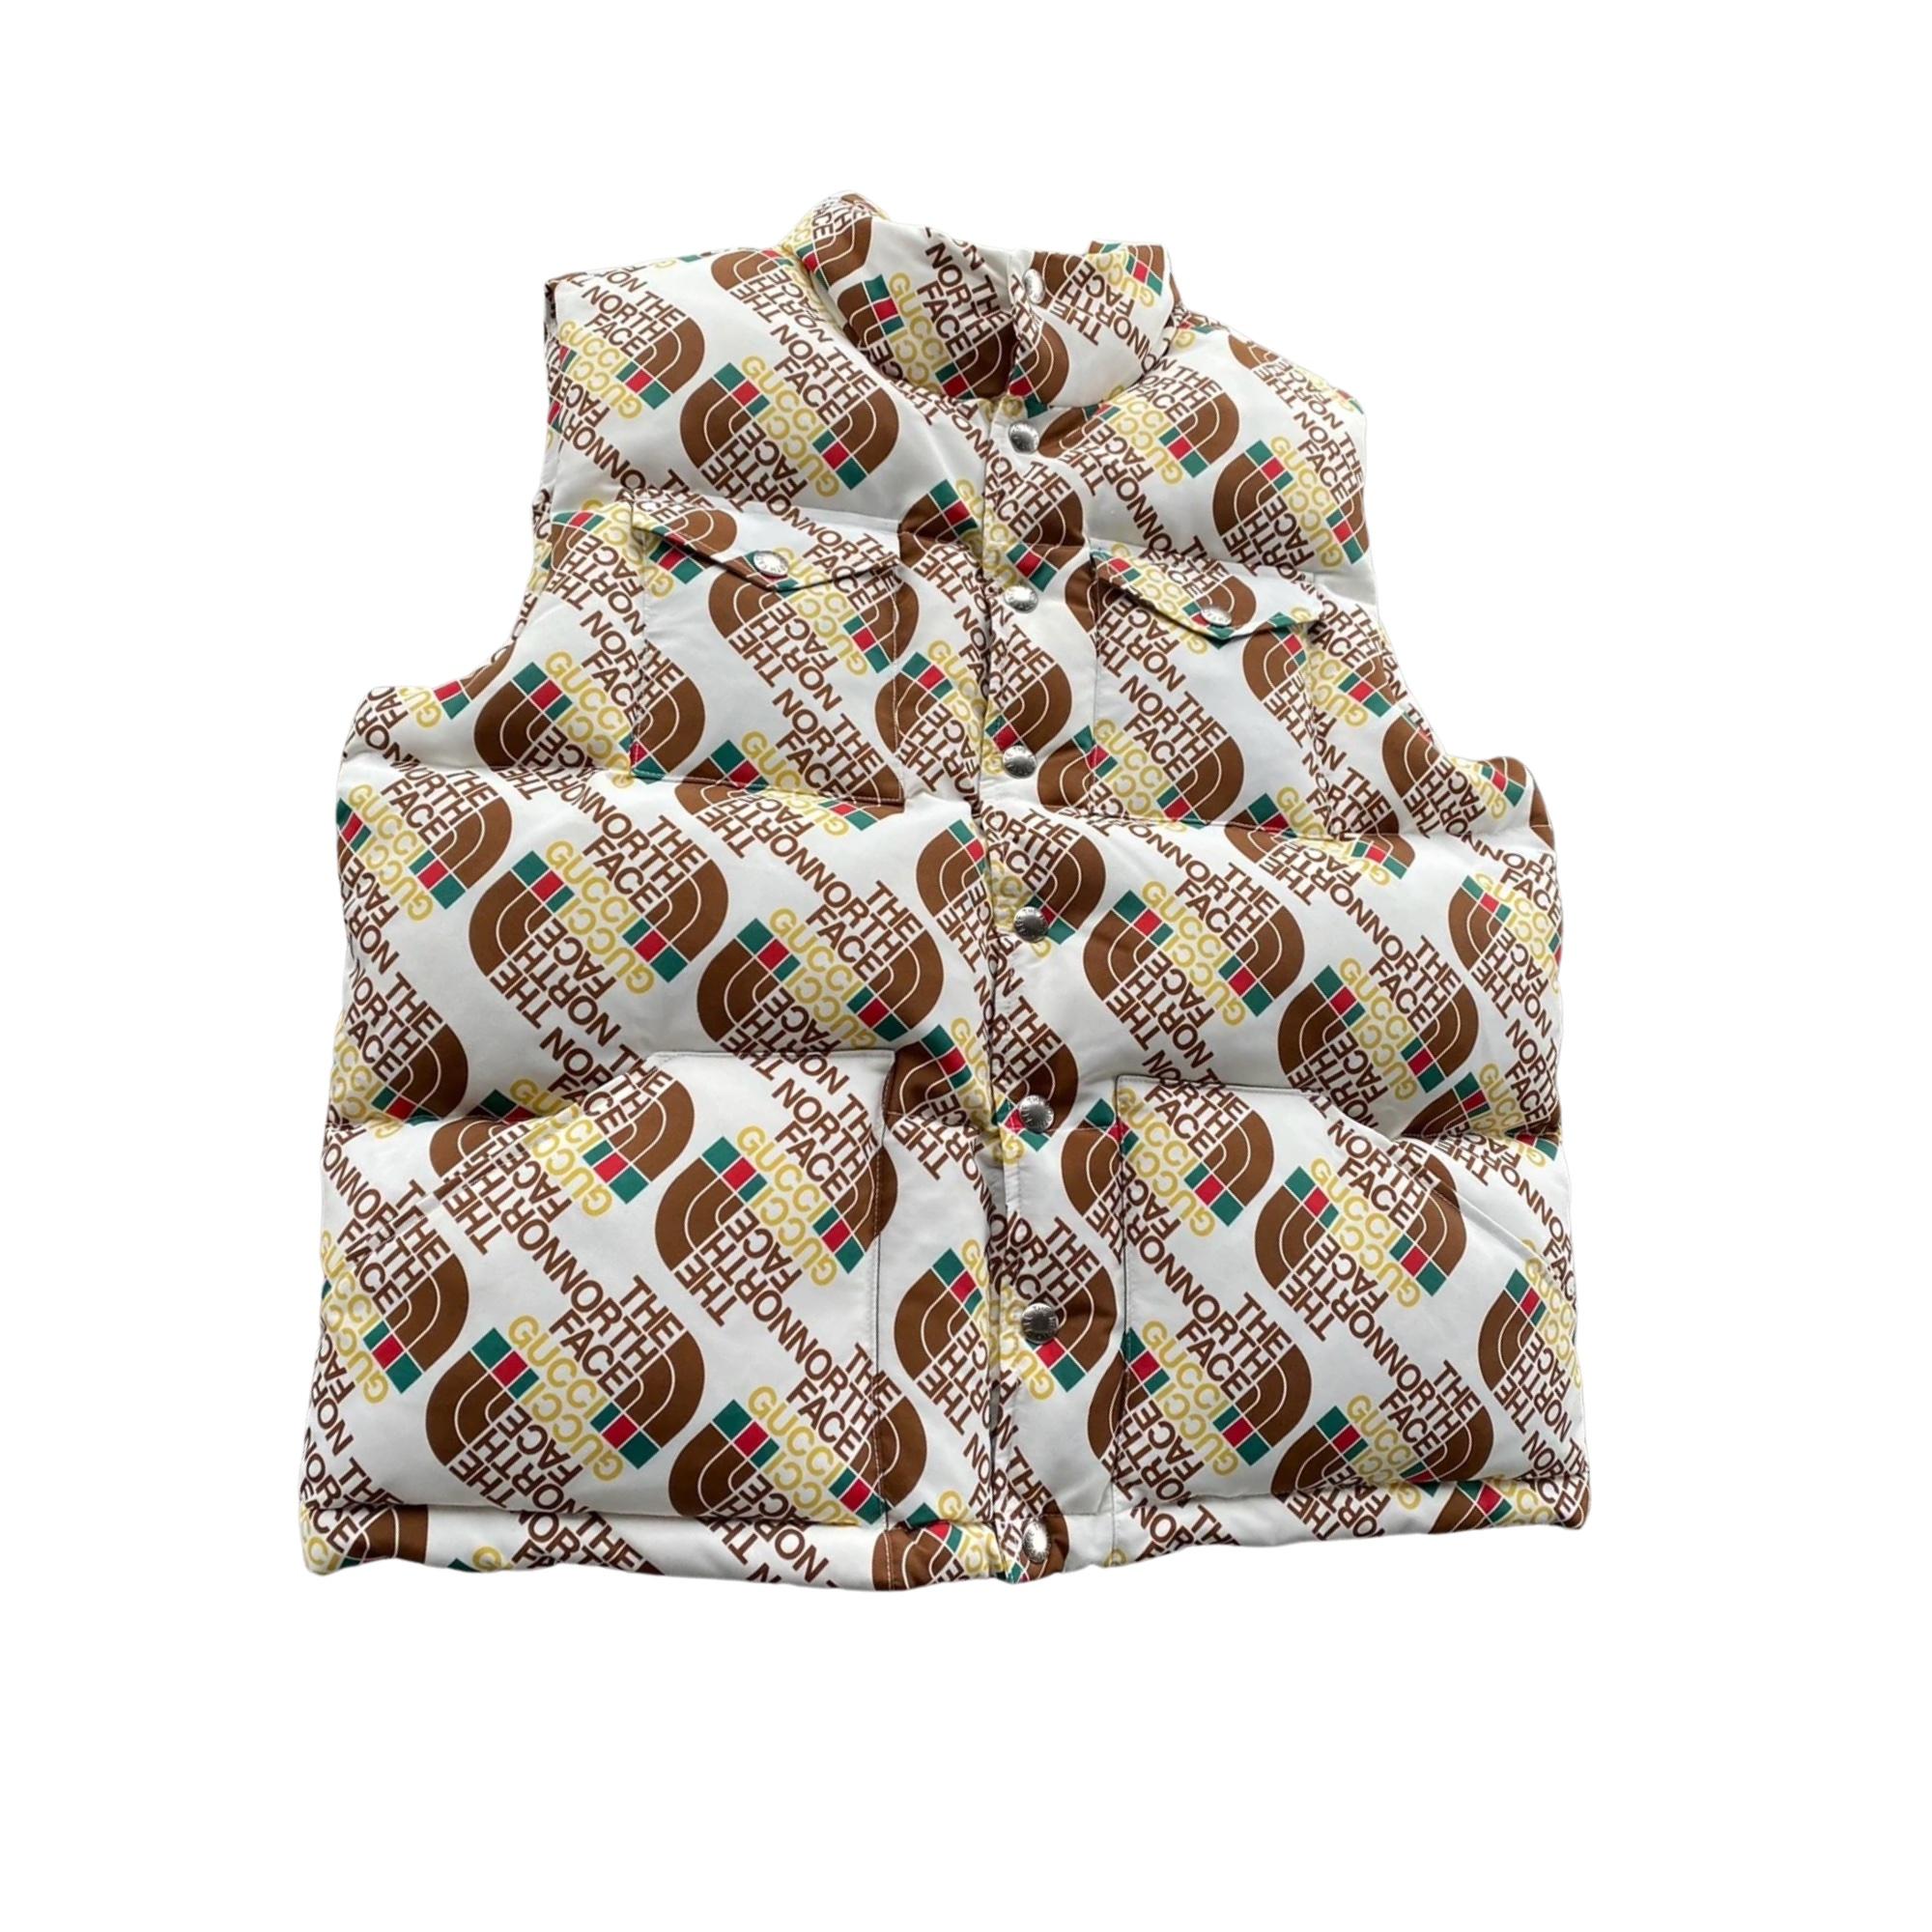 Diese Gucci X The North Face Down Filled Logo Puffer Vest ist Teil einer der angesagtesten Kollaborationen des Jahres 2021 und ist praktisch und modisch zugleich! Limitierte Auflage, die über den VIP-Zugang erworben wurde.  Neu mit Tags und